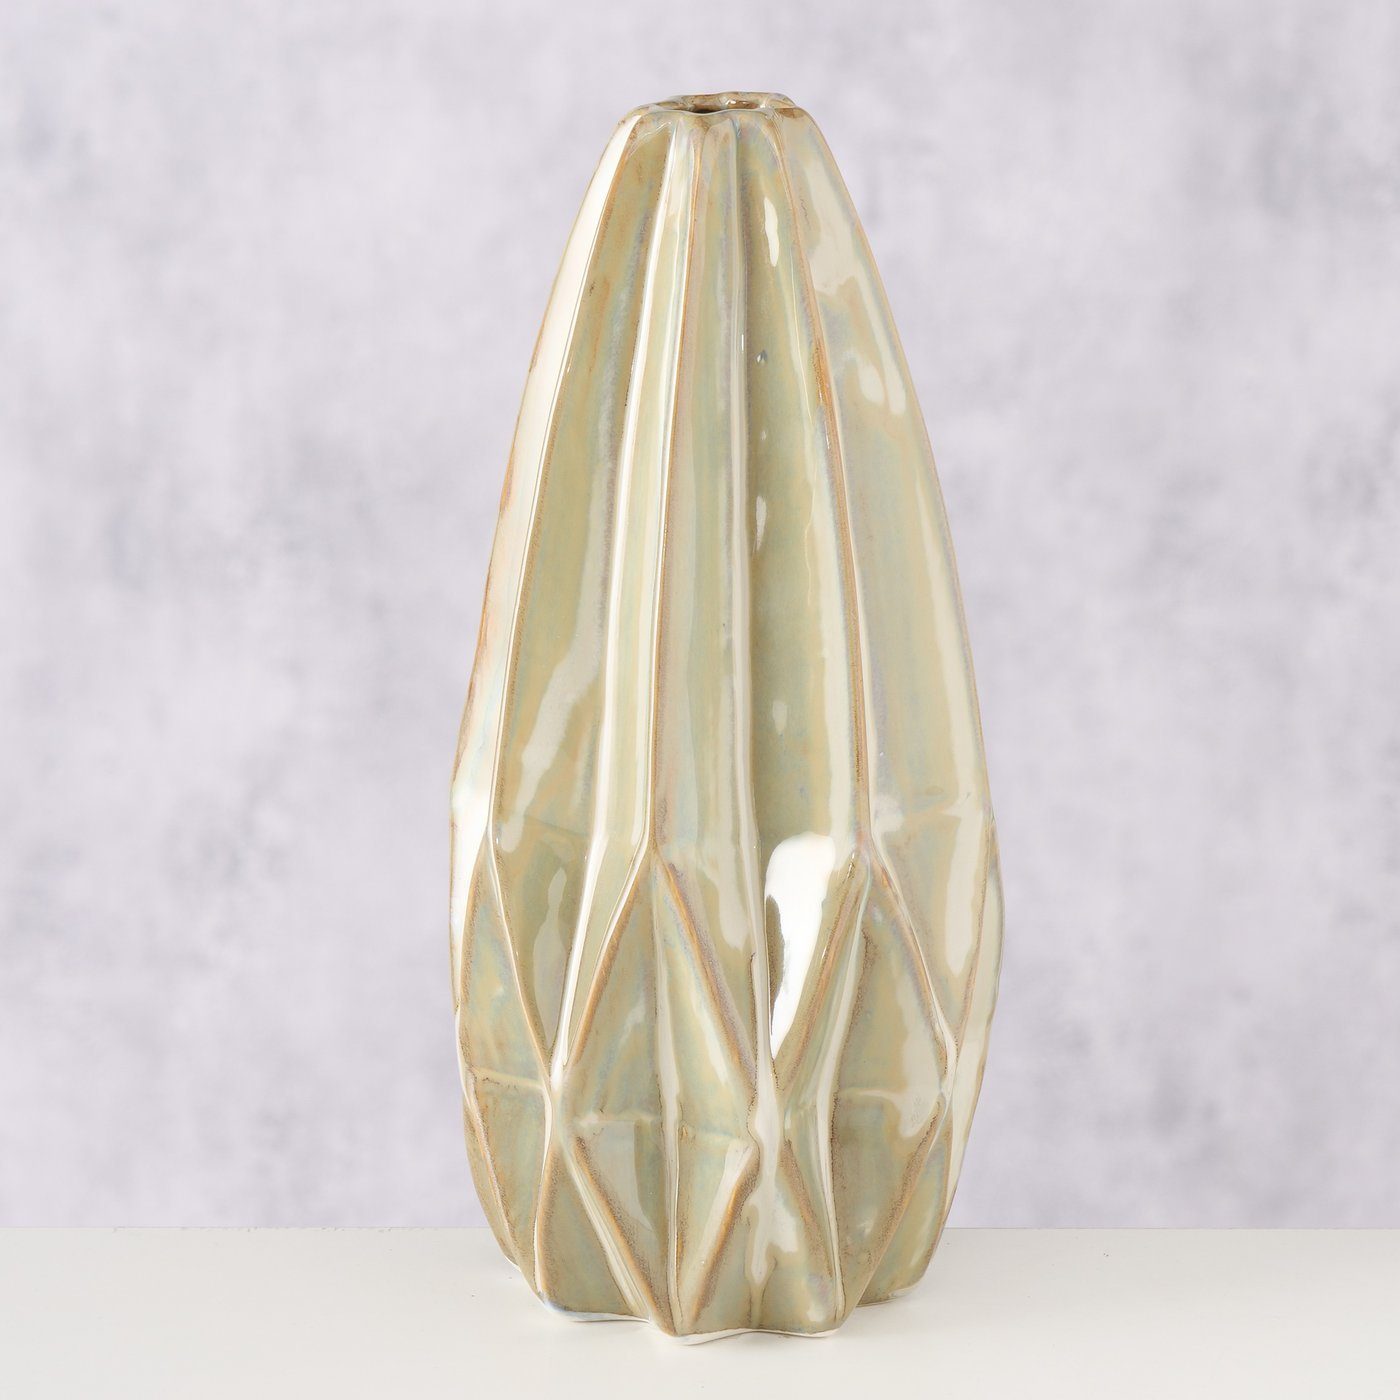 BOLTZE Dekovase "Stroma" aus Porzellan in beige, Vase Blumenvase